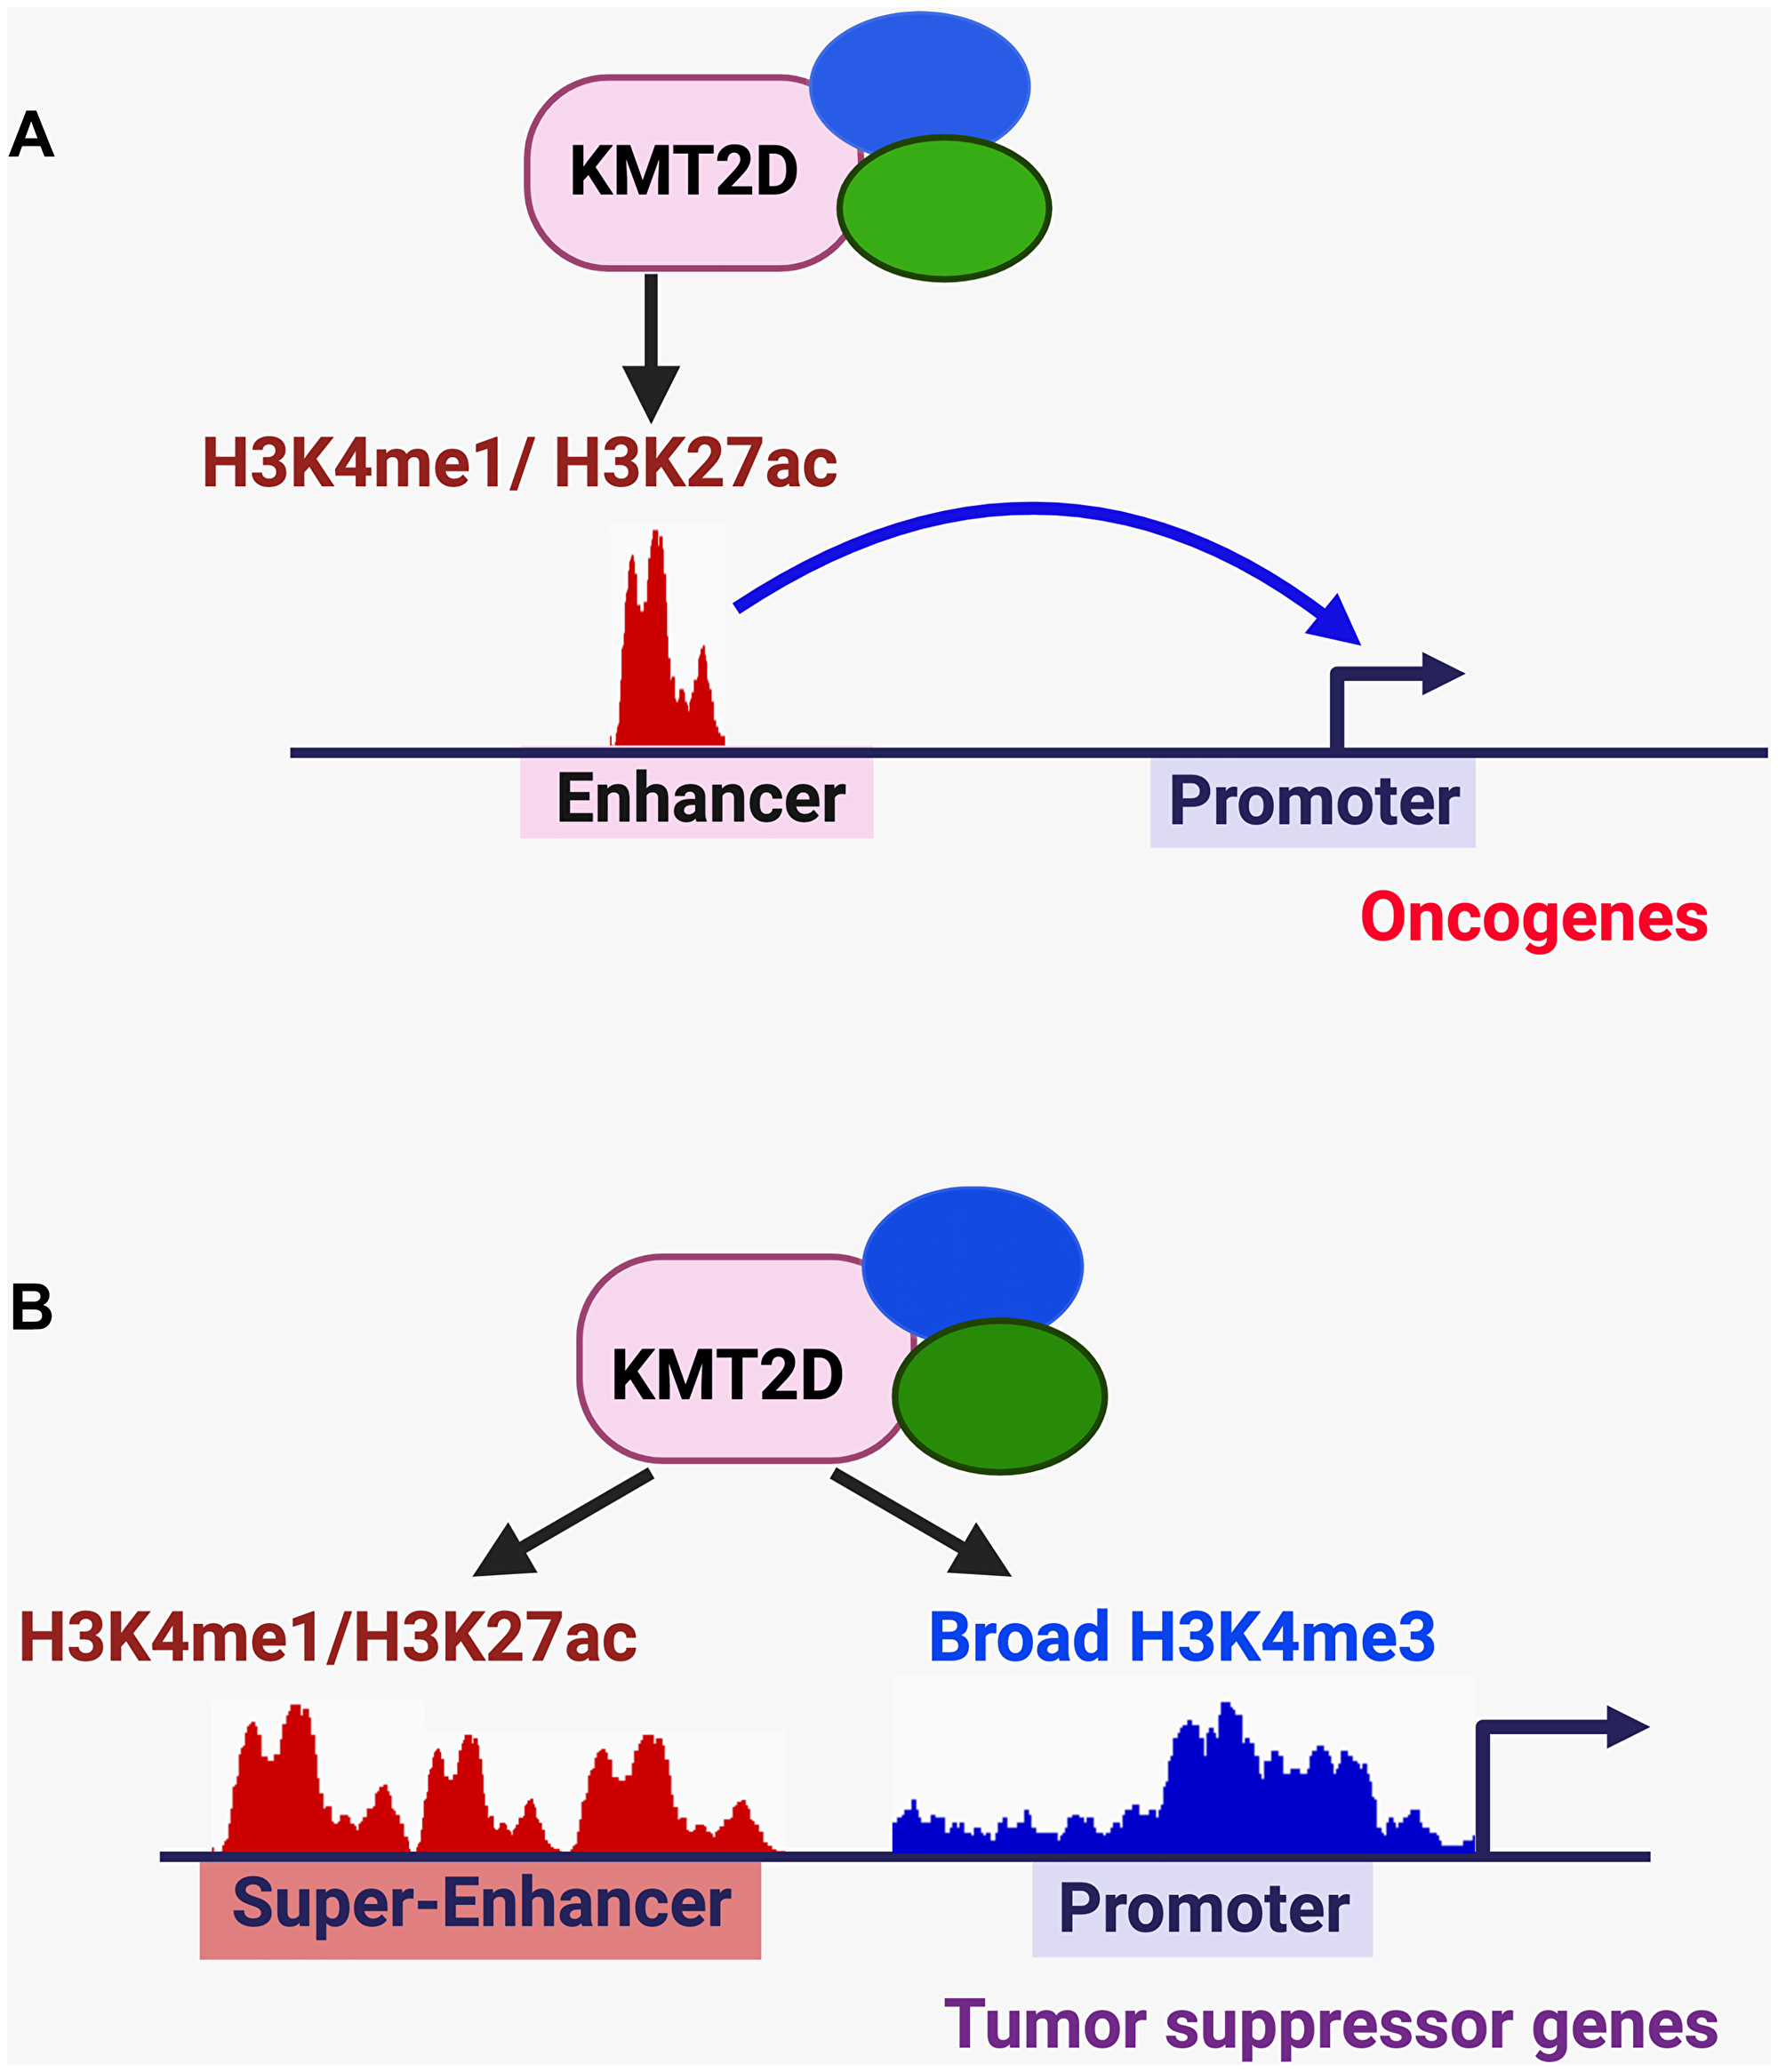 KMT2D-mediated regulation of enhancers, super-enhancers, and broad H3K4me3 signature in cancer.